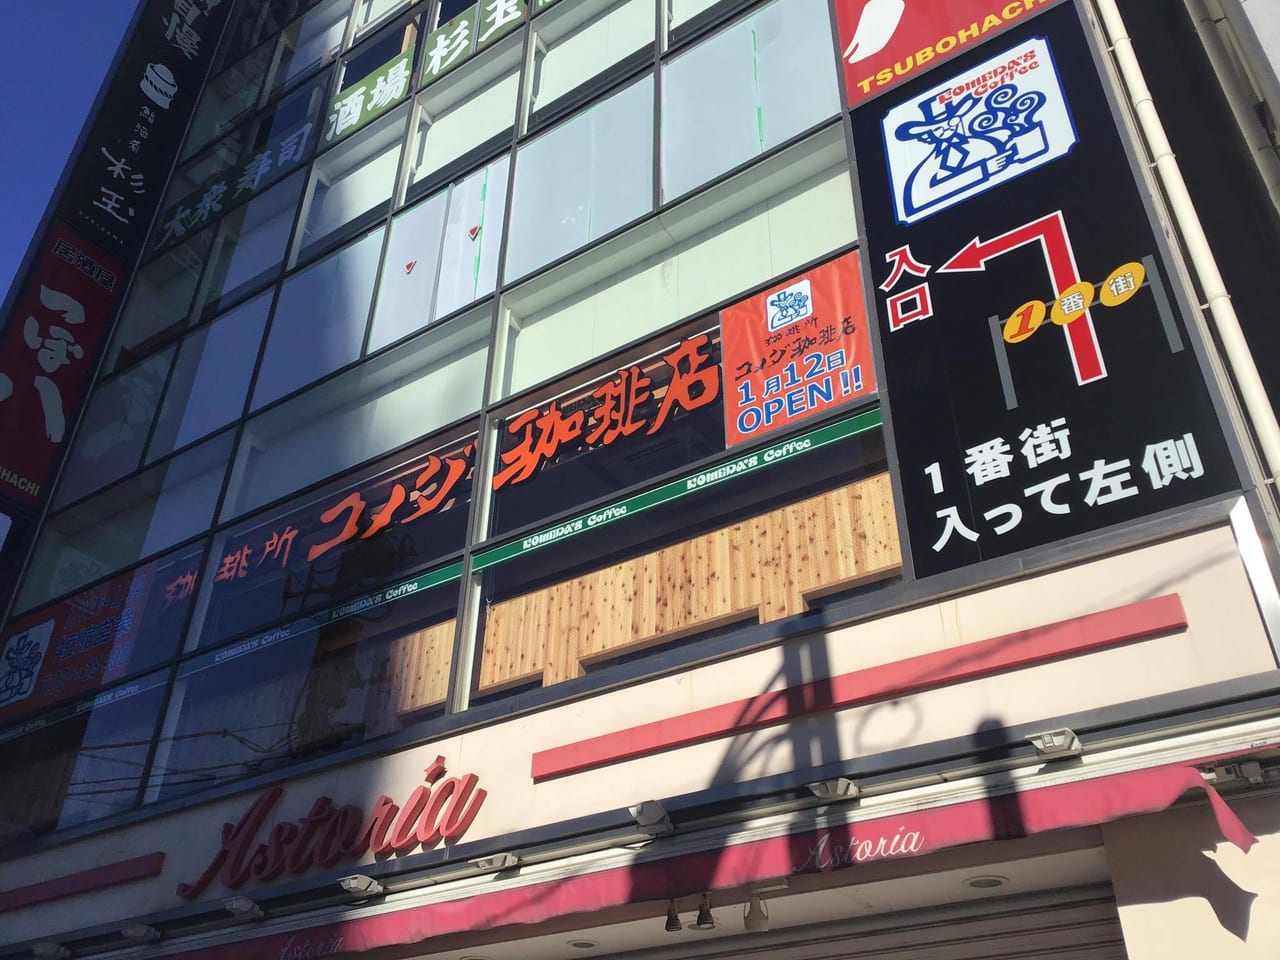 東京都北区 赤羽駅の東口にコメダ珈琲店がオープン予定です 号外net 東京都北区